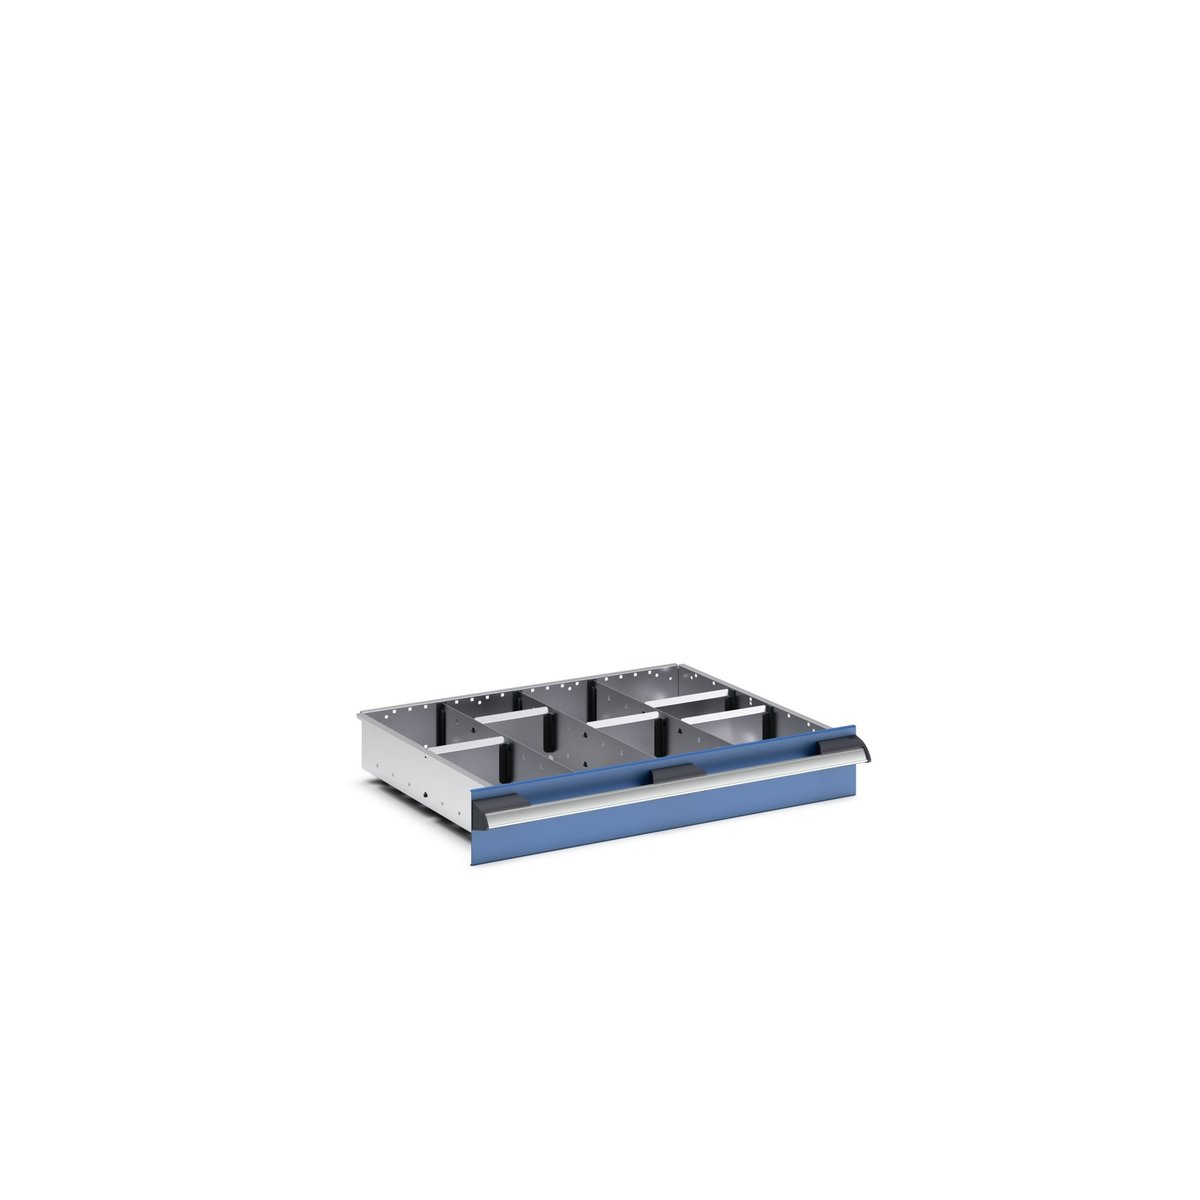 43020637.51 - cubio adjustable divider kit